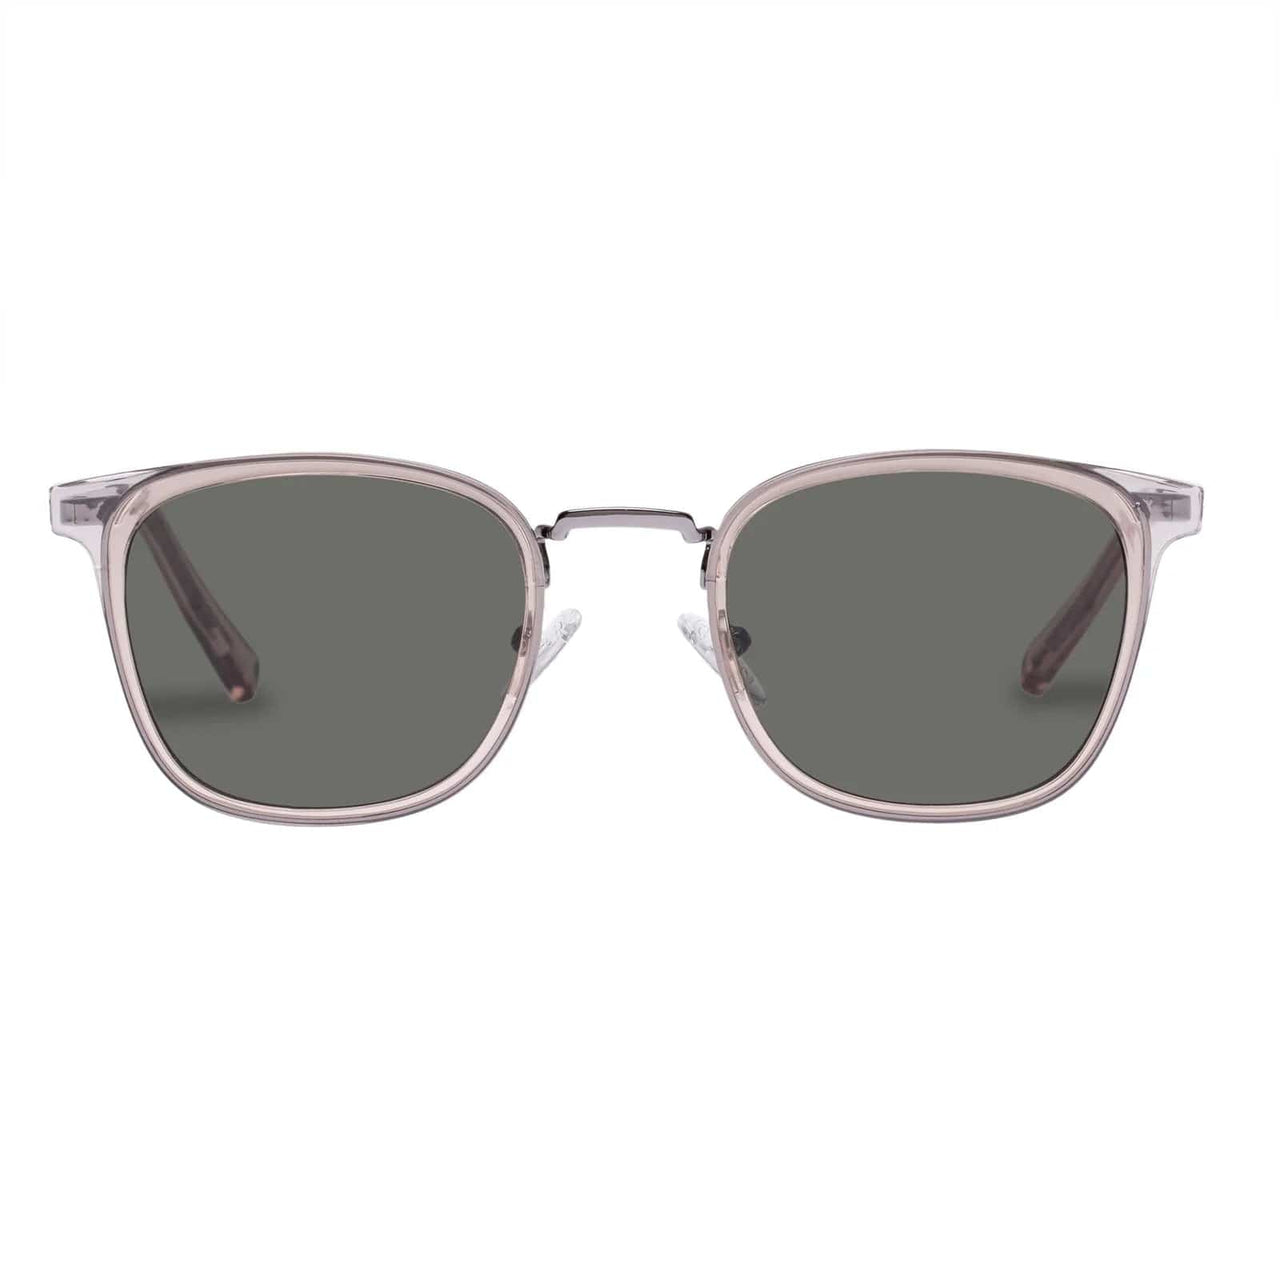 Racketeer Sunglasses Vintage Clear, Sunglasses by Le Spec | LIT Boutique